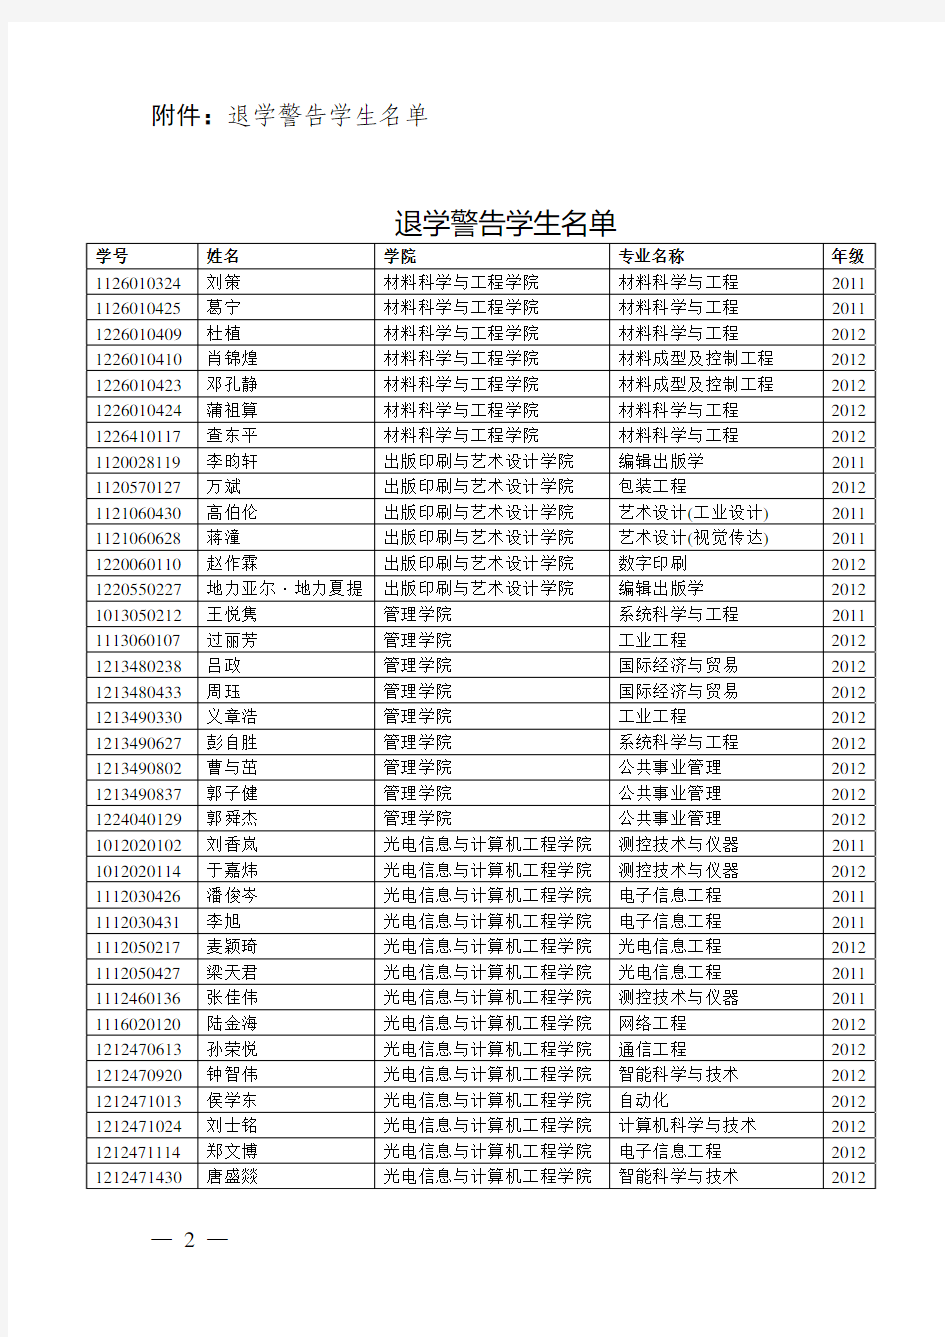 上海理工大学文件